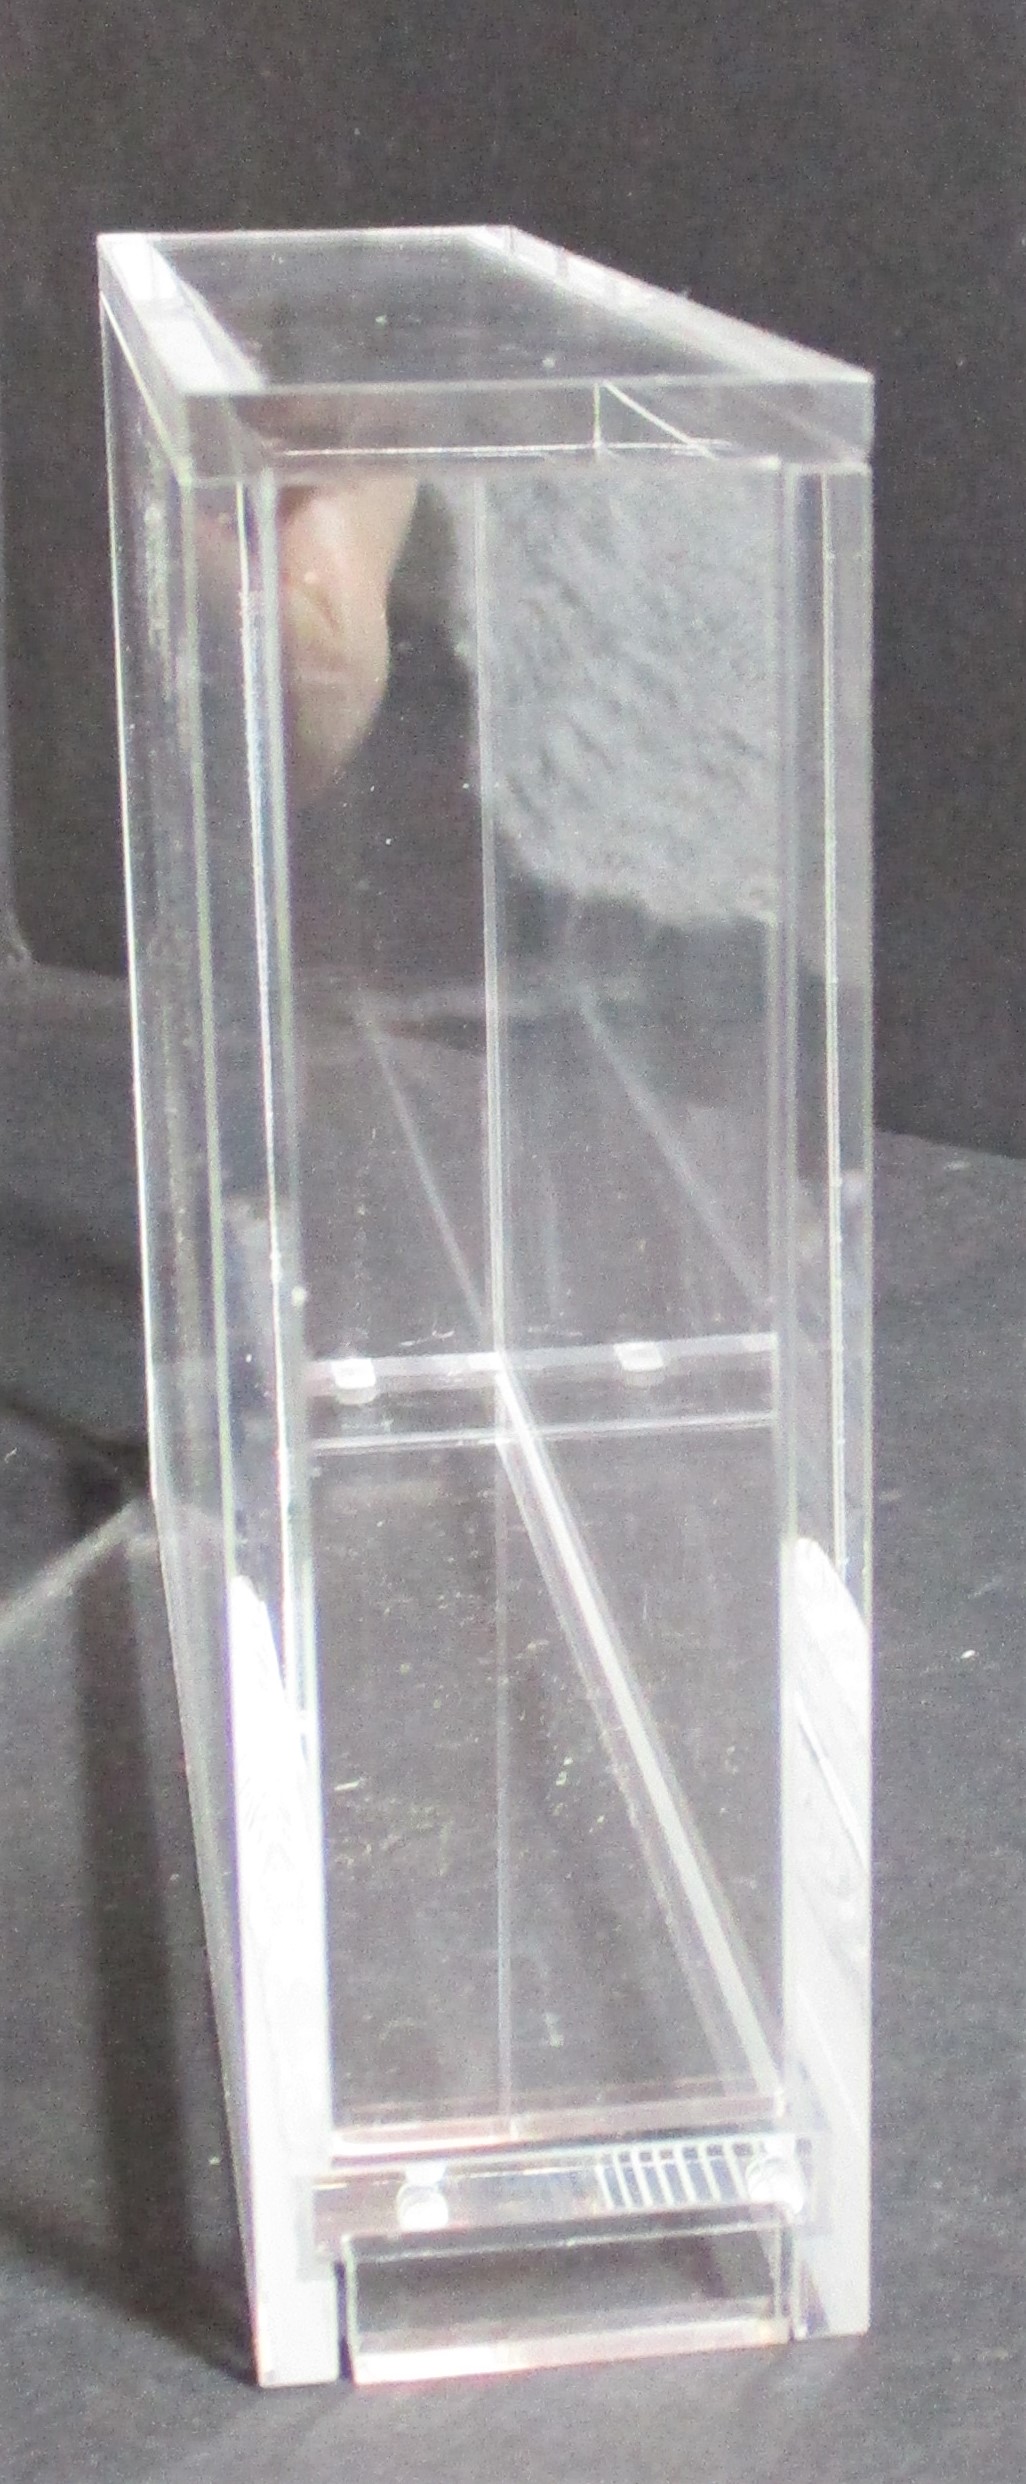 5x N-64 Loose Cartridge Acrylic Display Guard (60034)